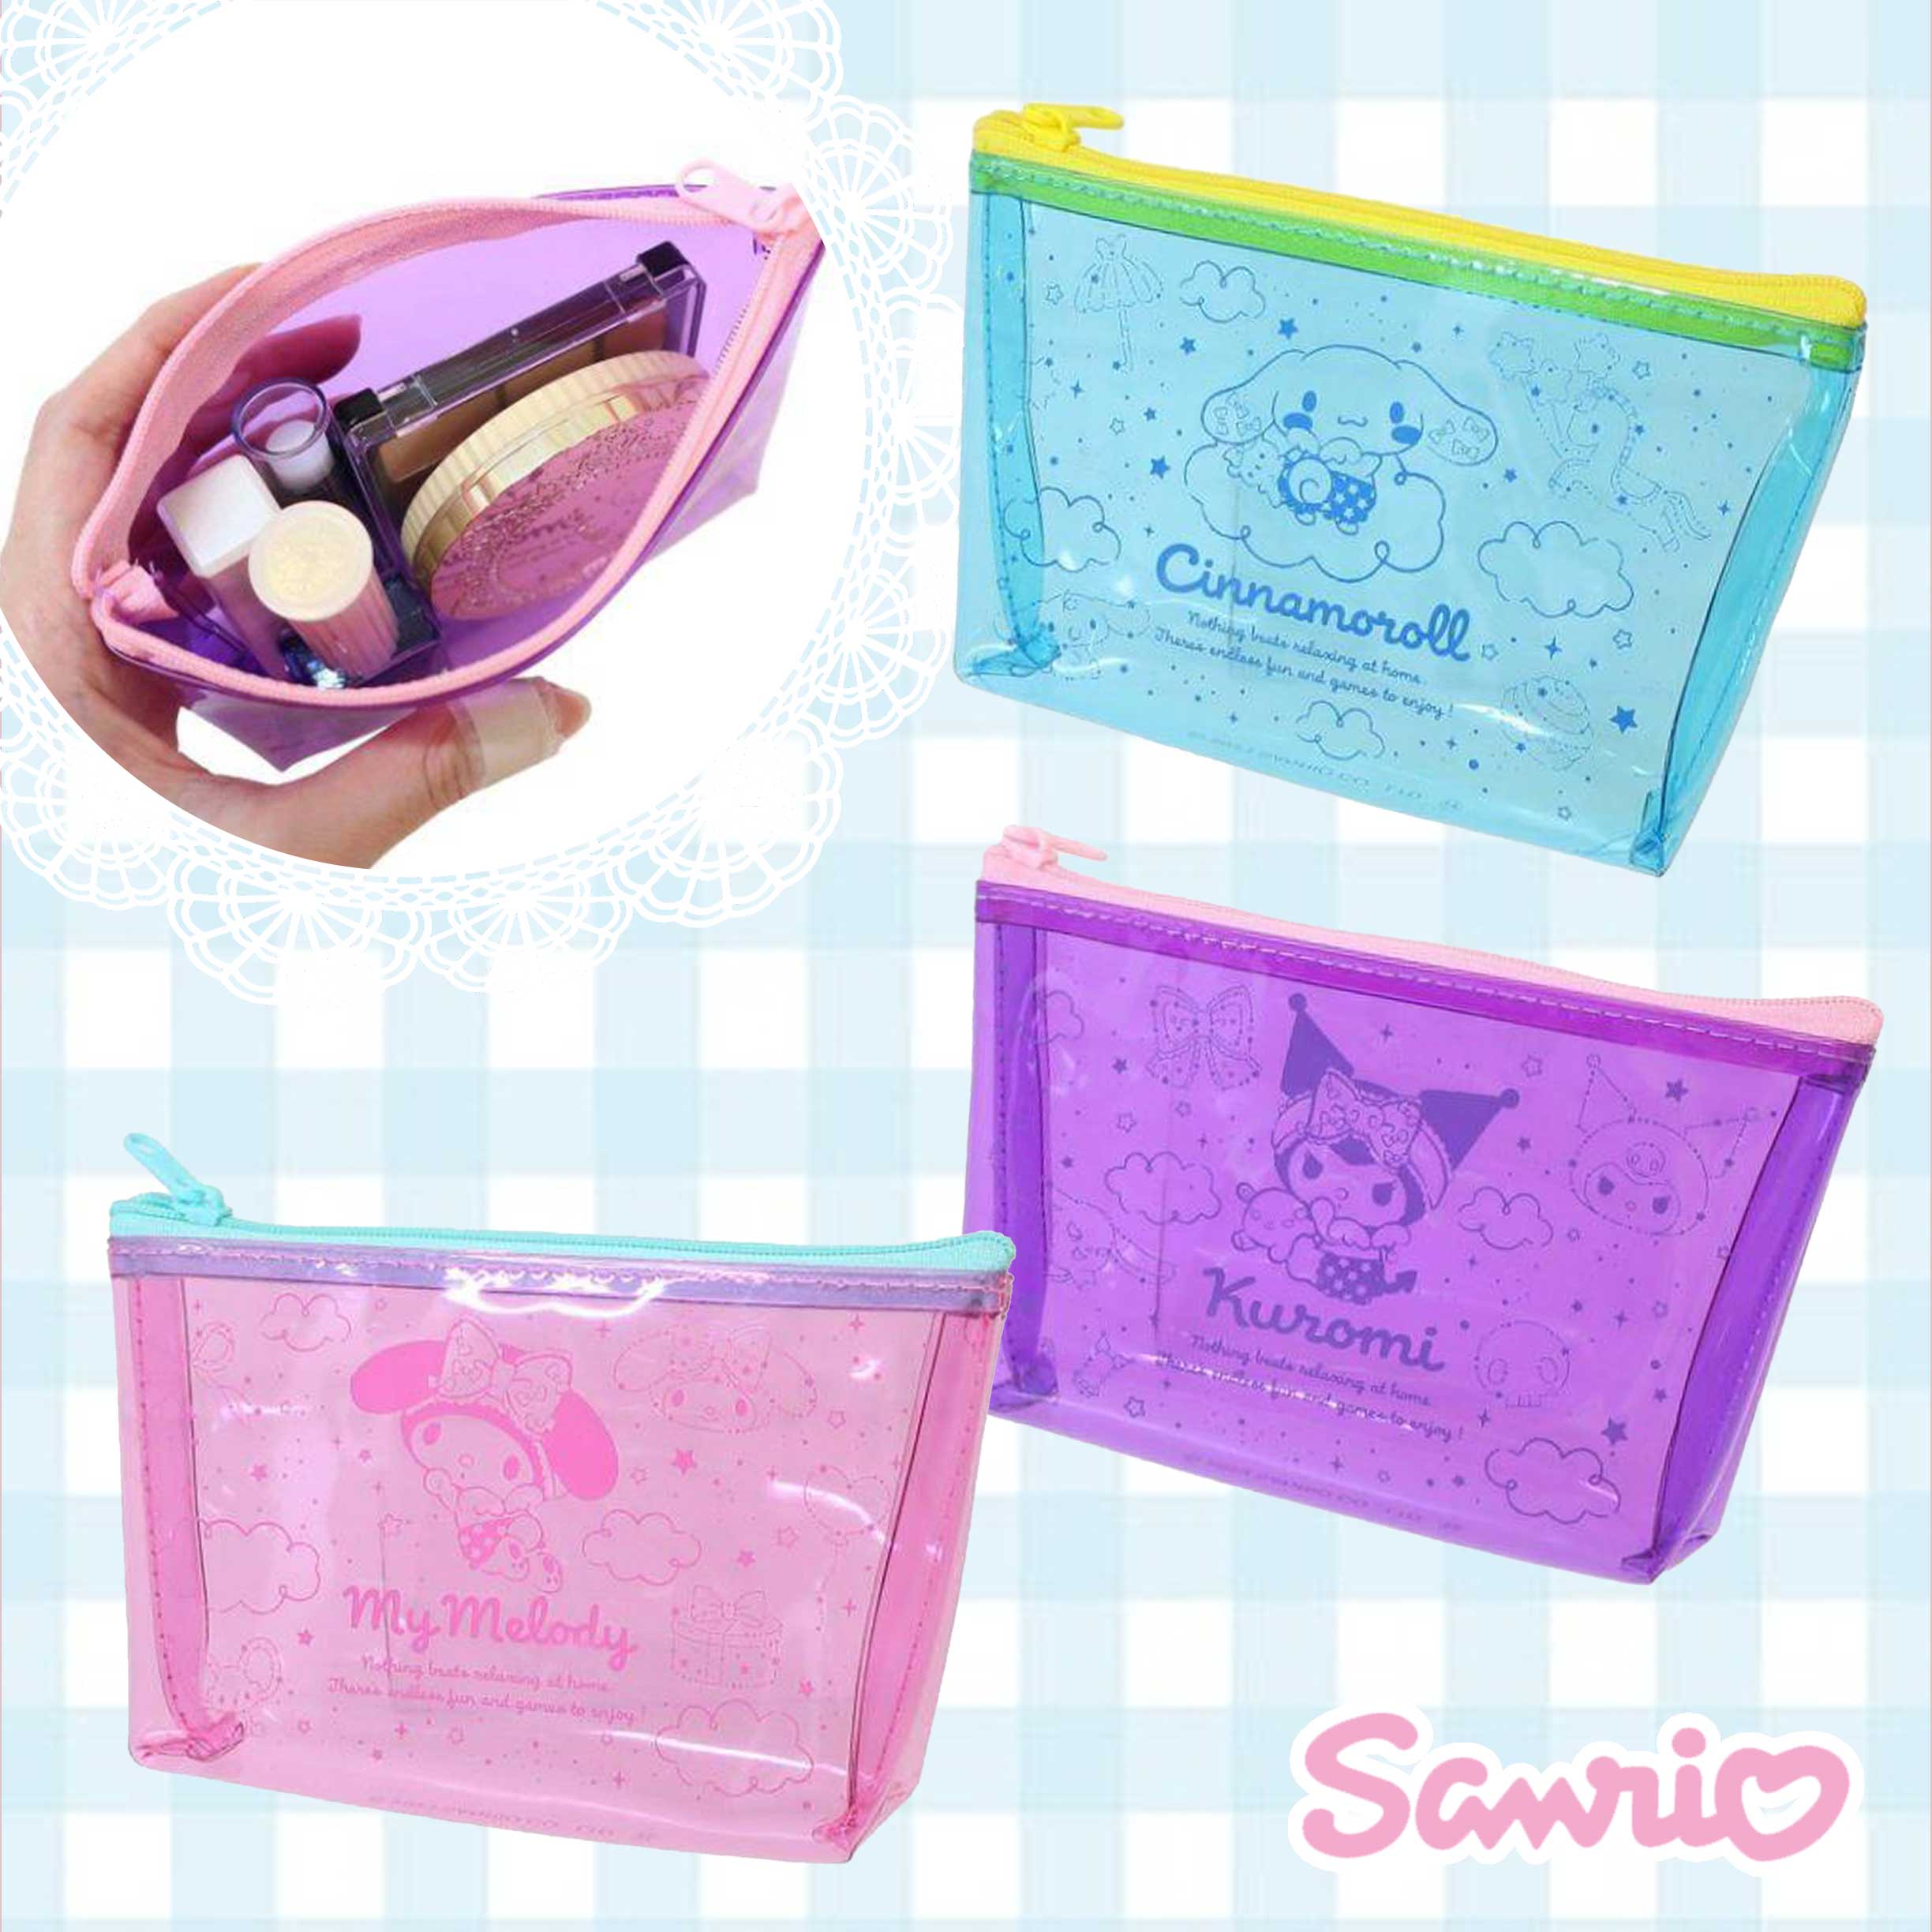 船形化妝包-三麗鷗 Sanrio 日本進口正版授權